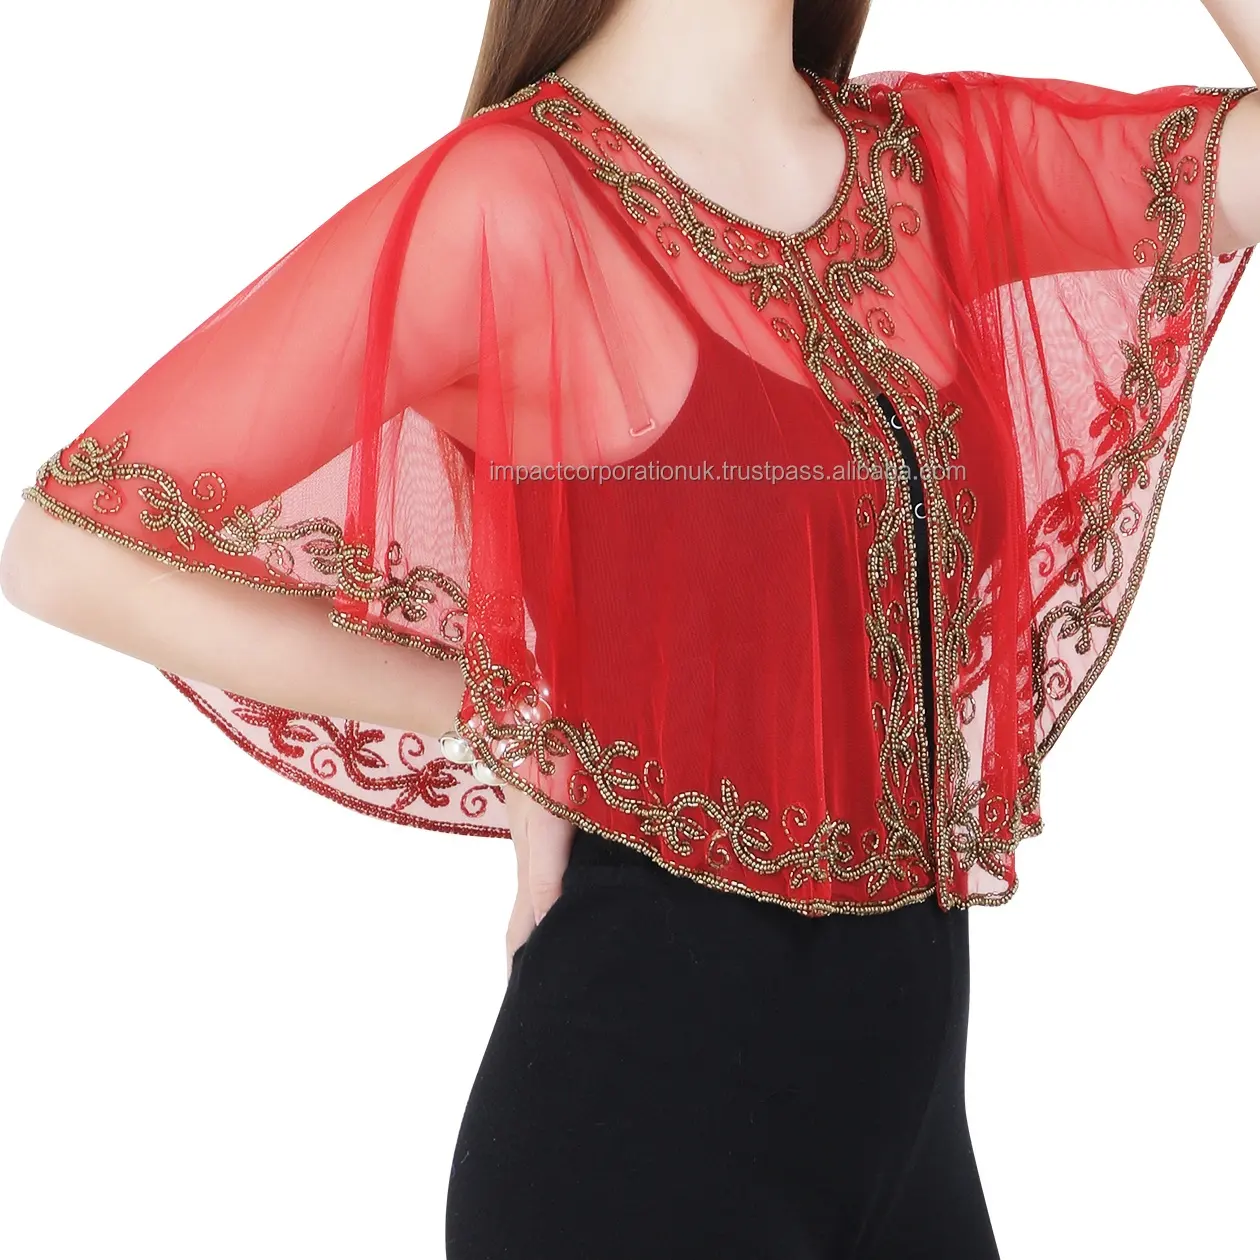 Poncho de tela de red suave para mujer, con diseños de bordado superior, con cuentas doradas, trabajo exclusivo, última Red, corto, Poncho/top/encogimiento de hombros